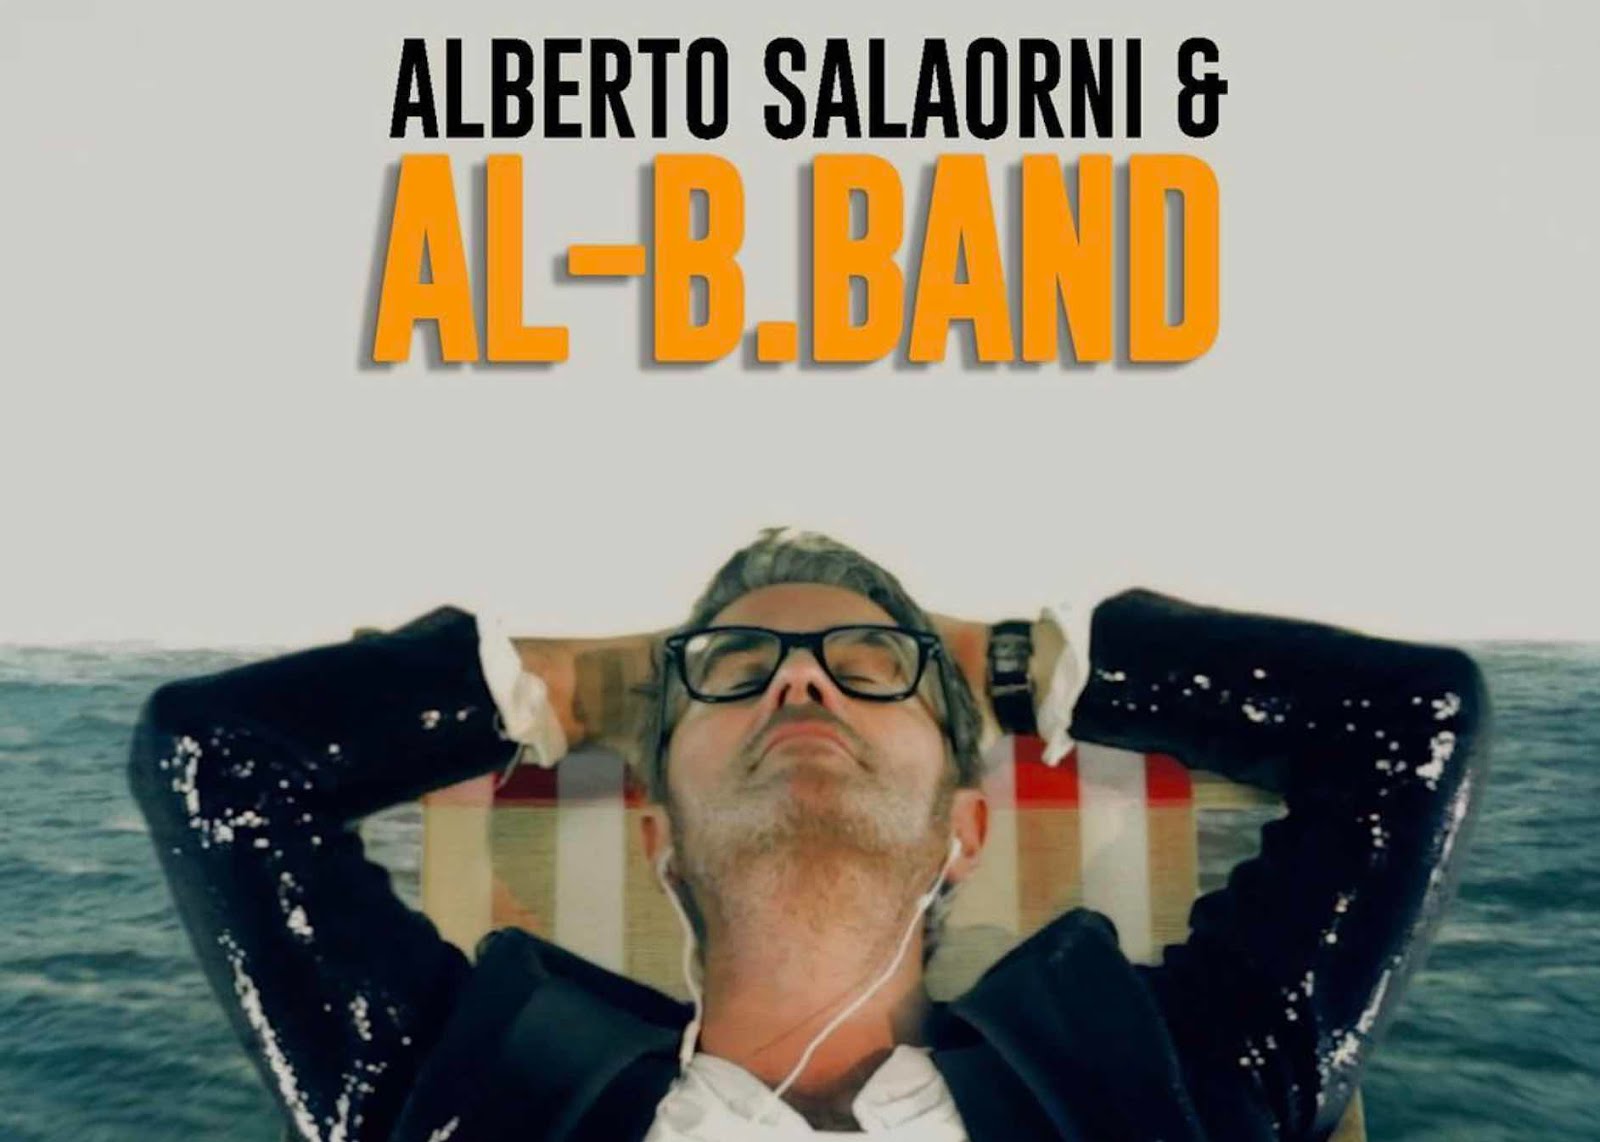 Alberto Salaorni & Al-B.Band fanno emozionare il Veneto